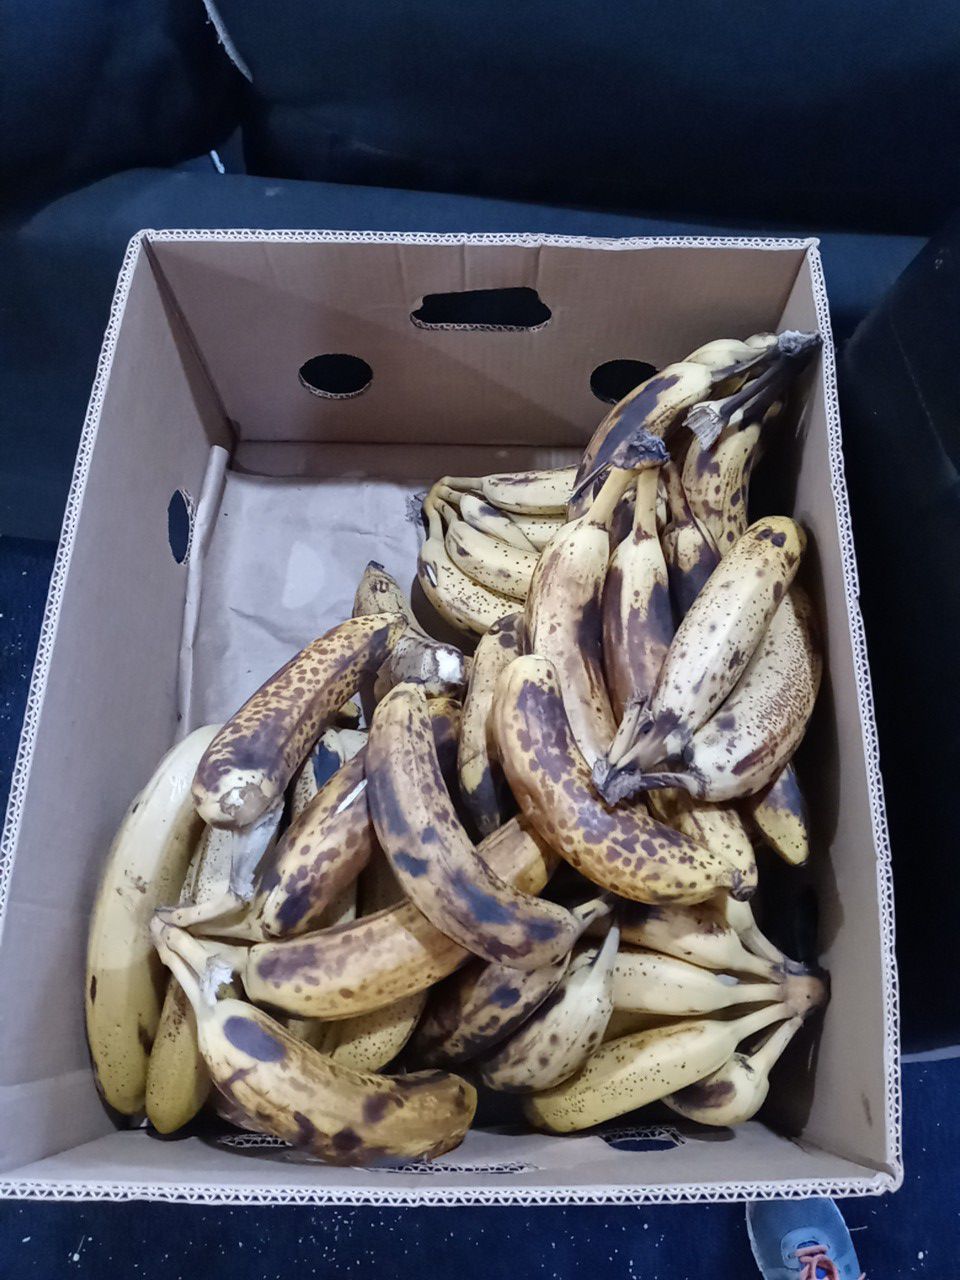 Free Bananas